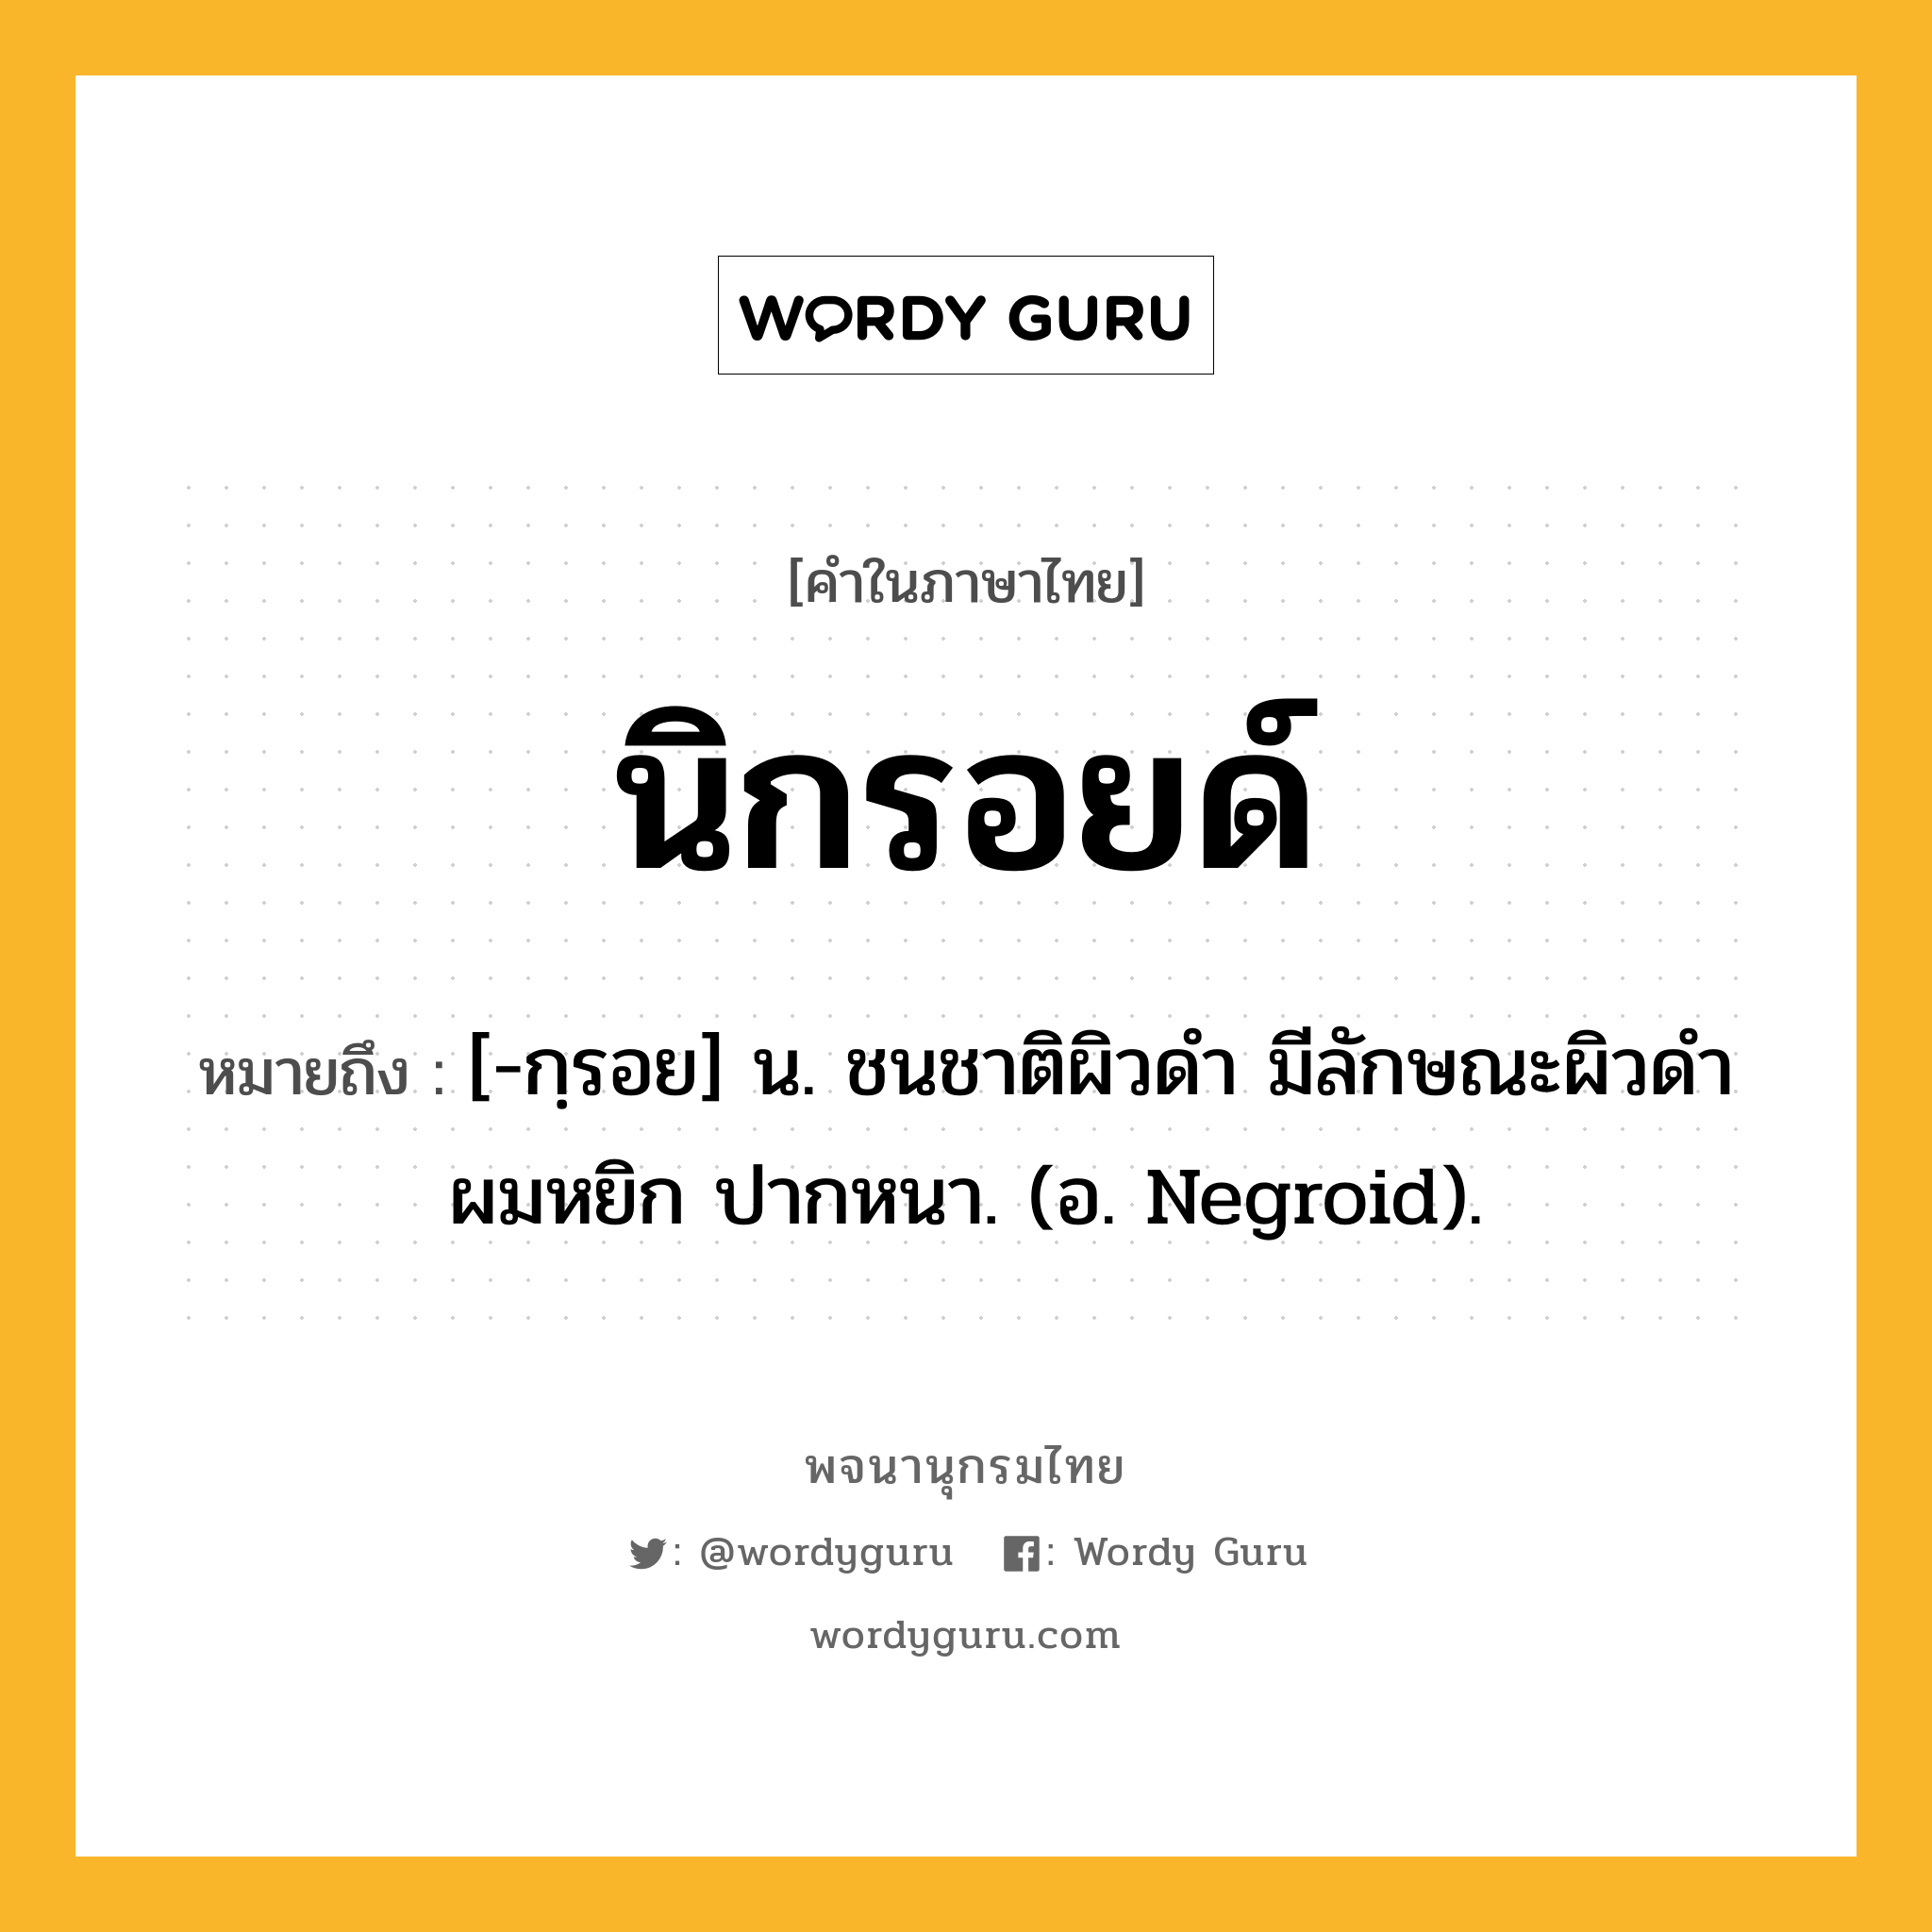 นิกรอยด์ หมายถึงอะไร?, คำในภาษาไทย นิกรอยด์ หมายถึง [-กฺรอย] น. ชนชาติผิวดํา มีลักษณะผิวดํา ผมหยิก ปากหนา. (อ. Negroid).